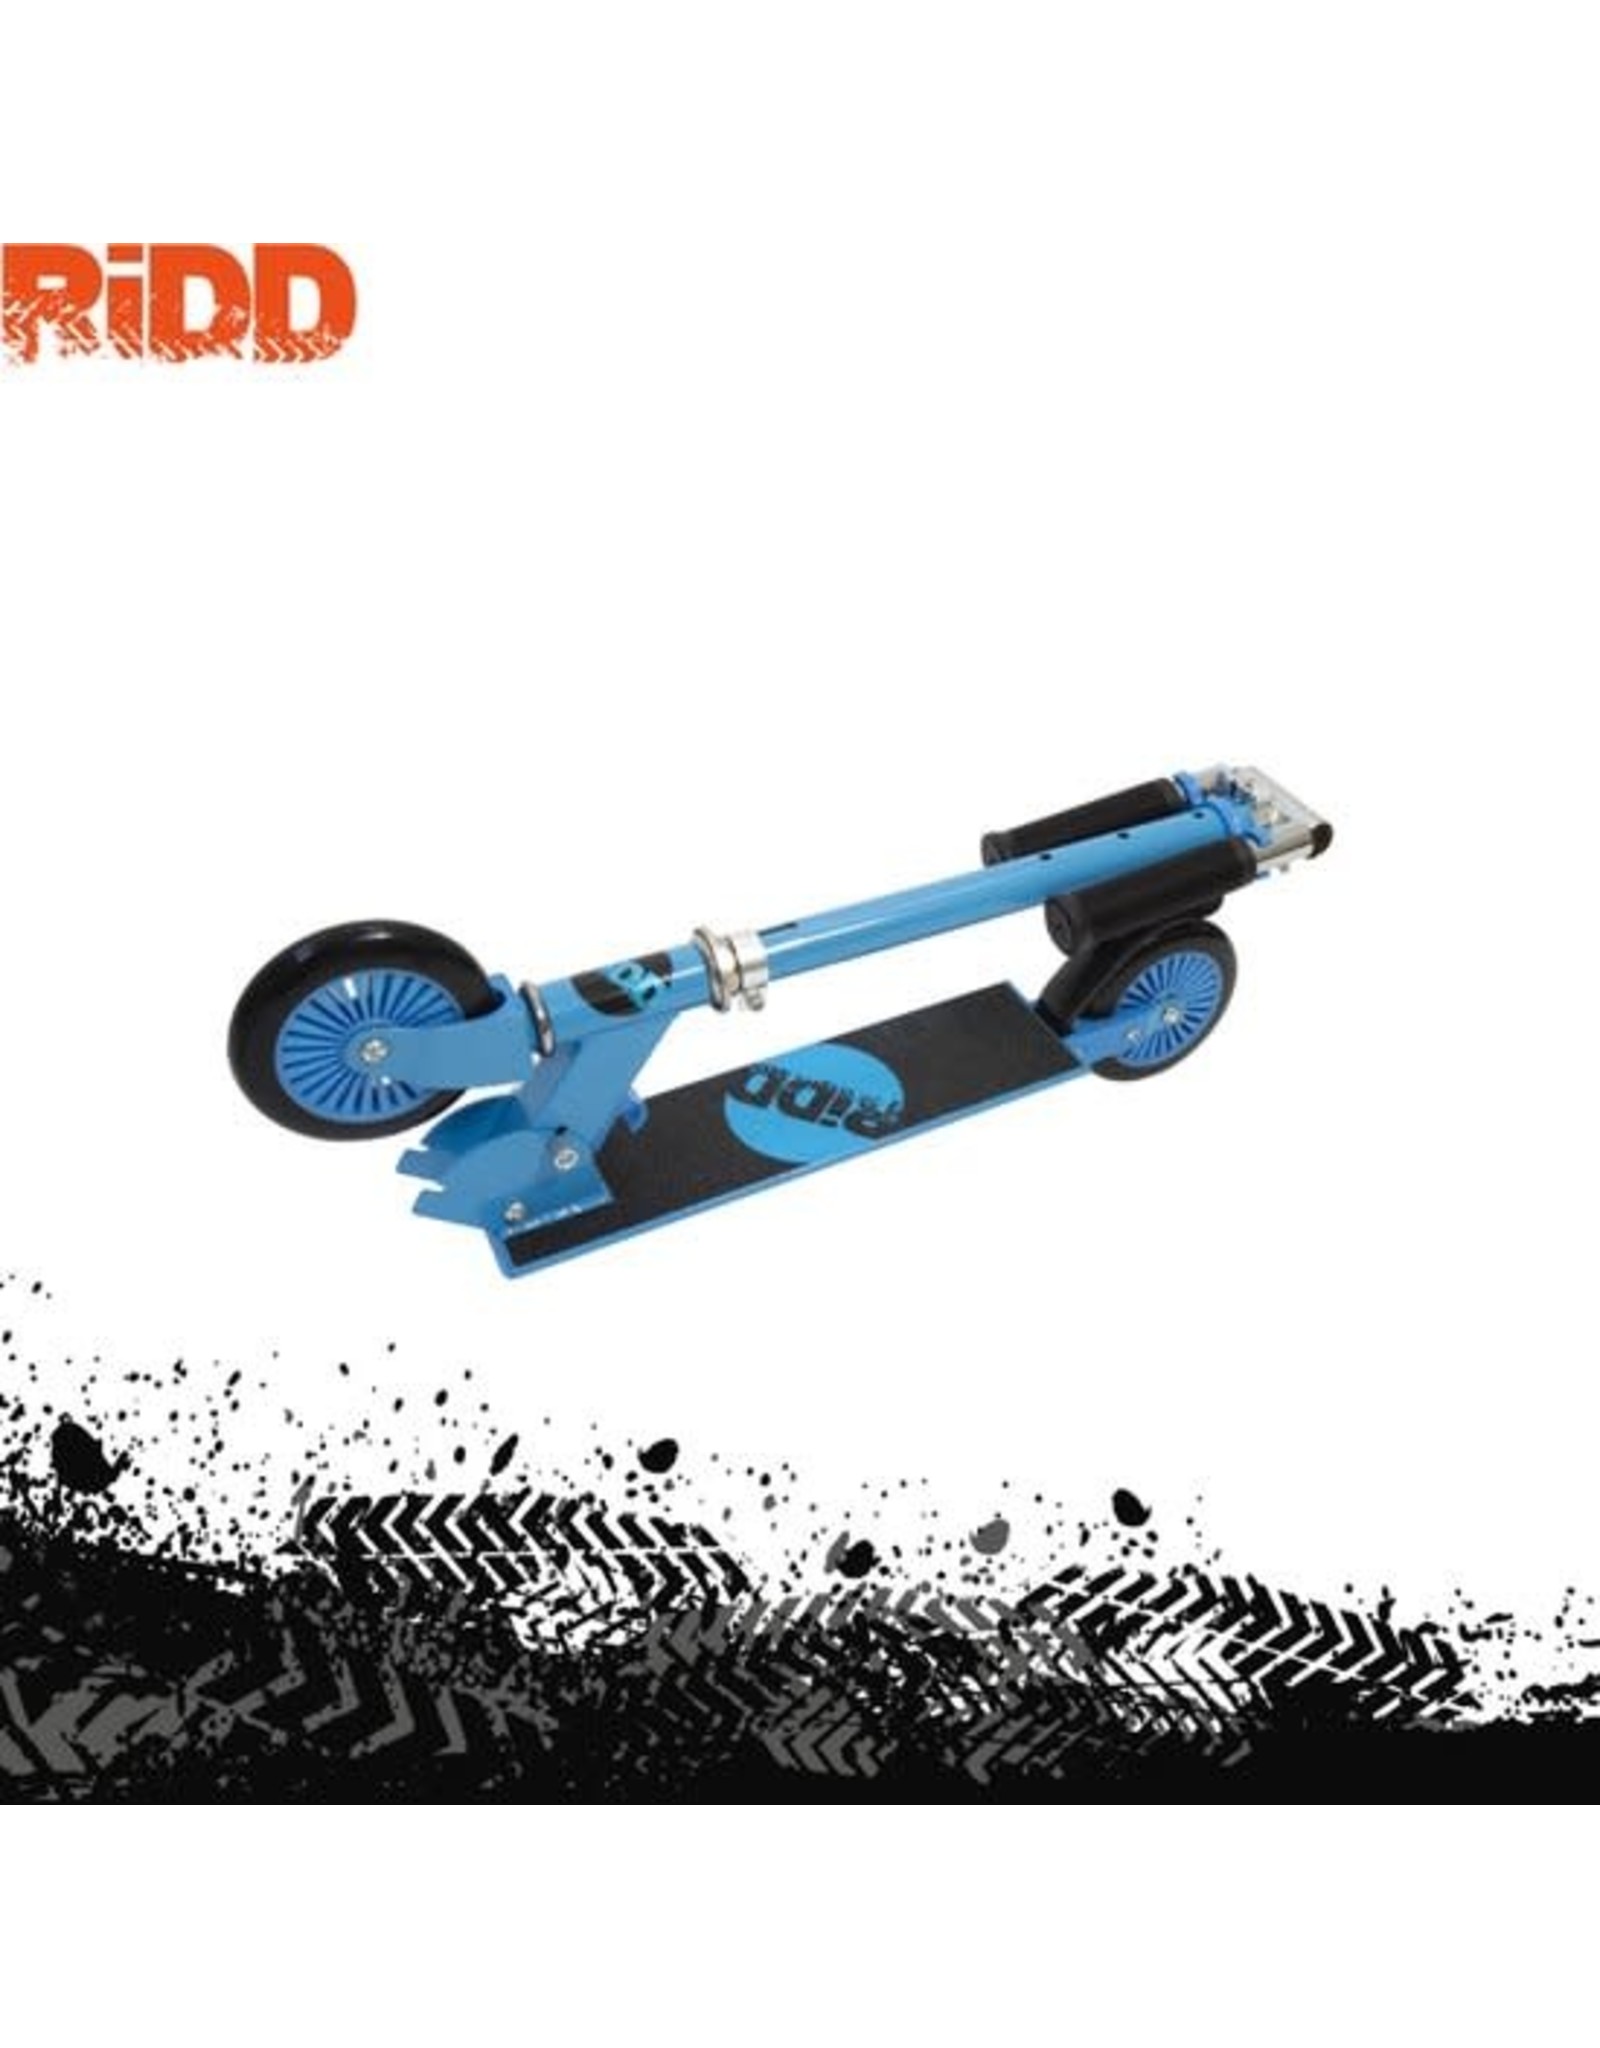 RIDD RiDD Foldable Kids Scooter - Foldable Scooter - Opvouwbare Step - ABEC-7 - Vanaf 5 jaar - 125 mm PU Wheels - Voetrem - Pink - Roze